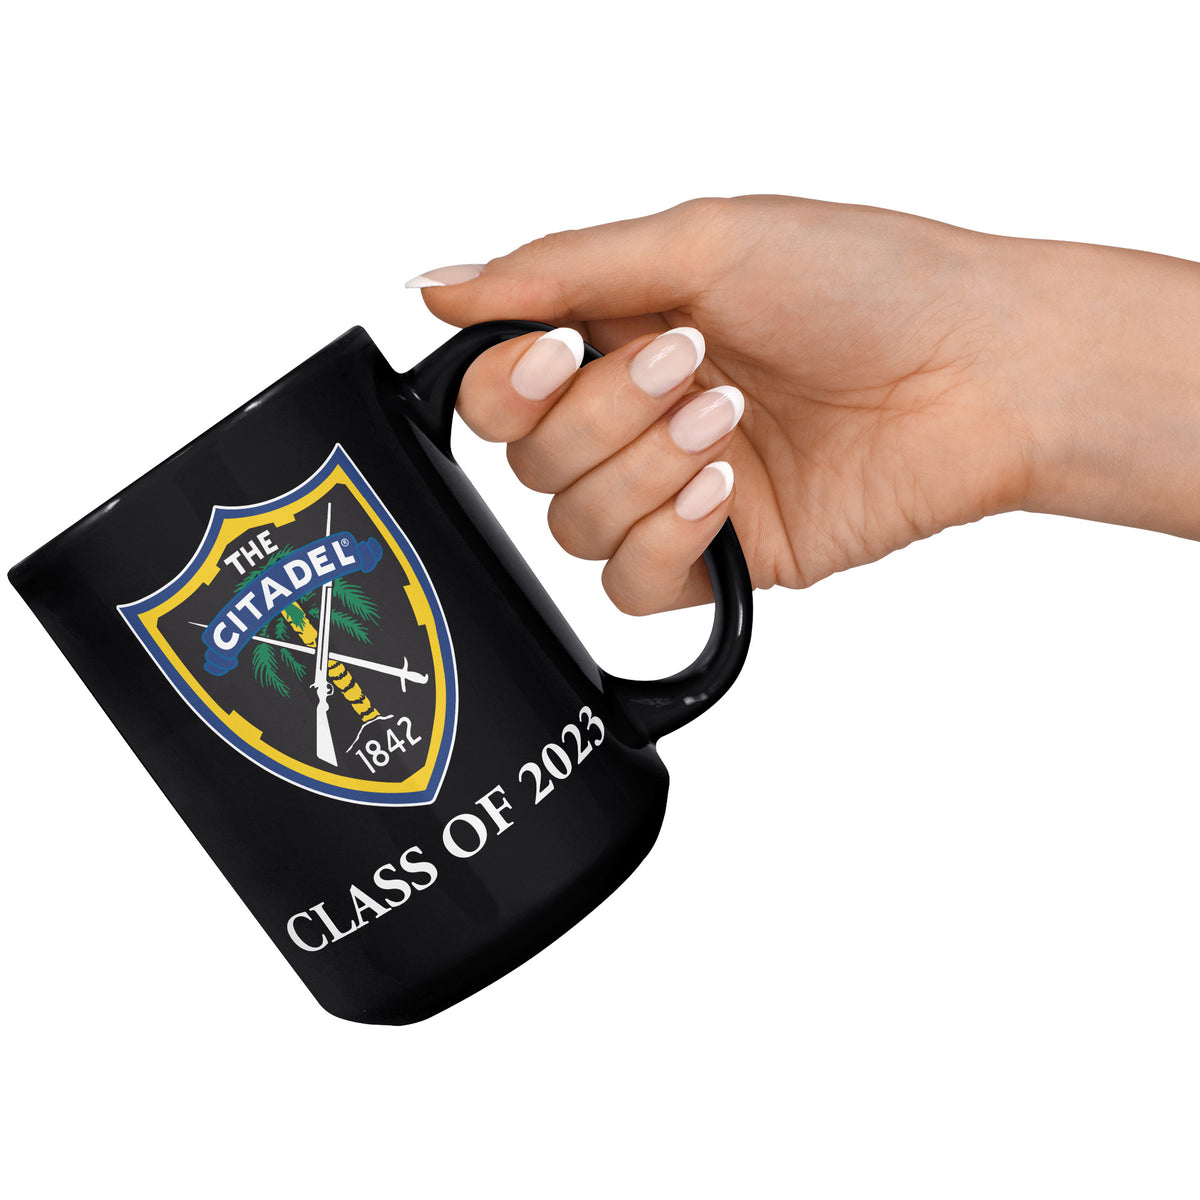 Class Of 2023 Shield Black Mug - 15oz